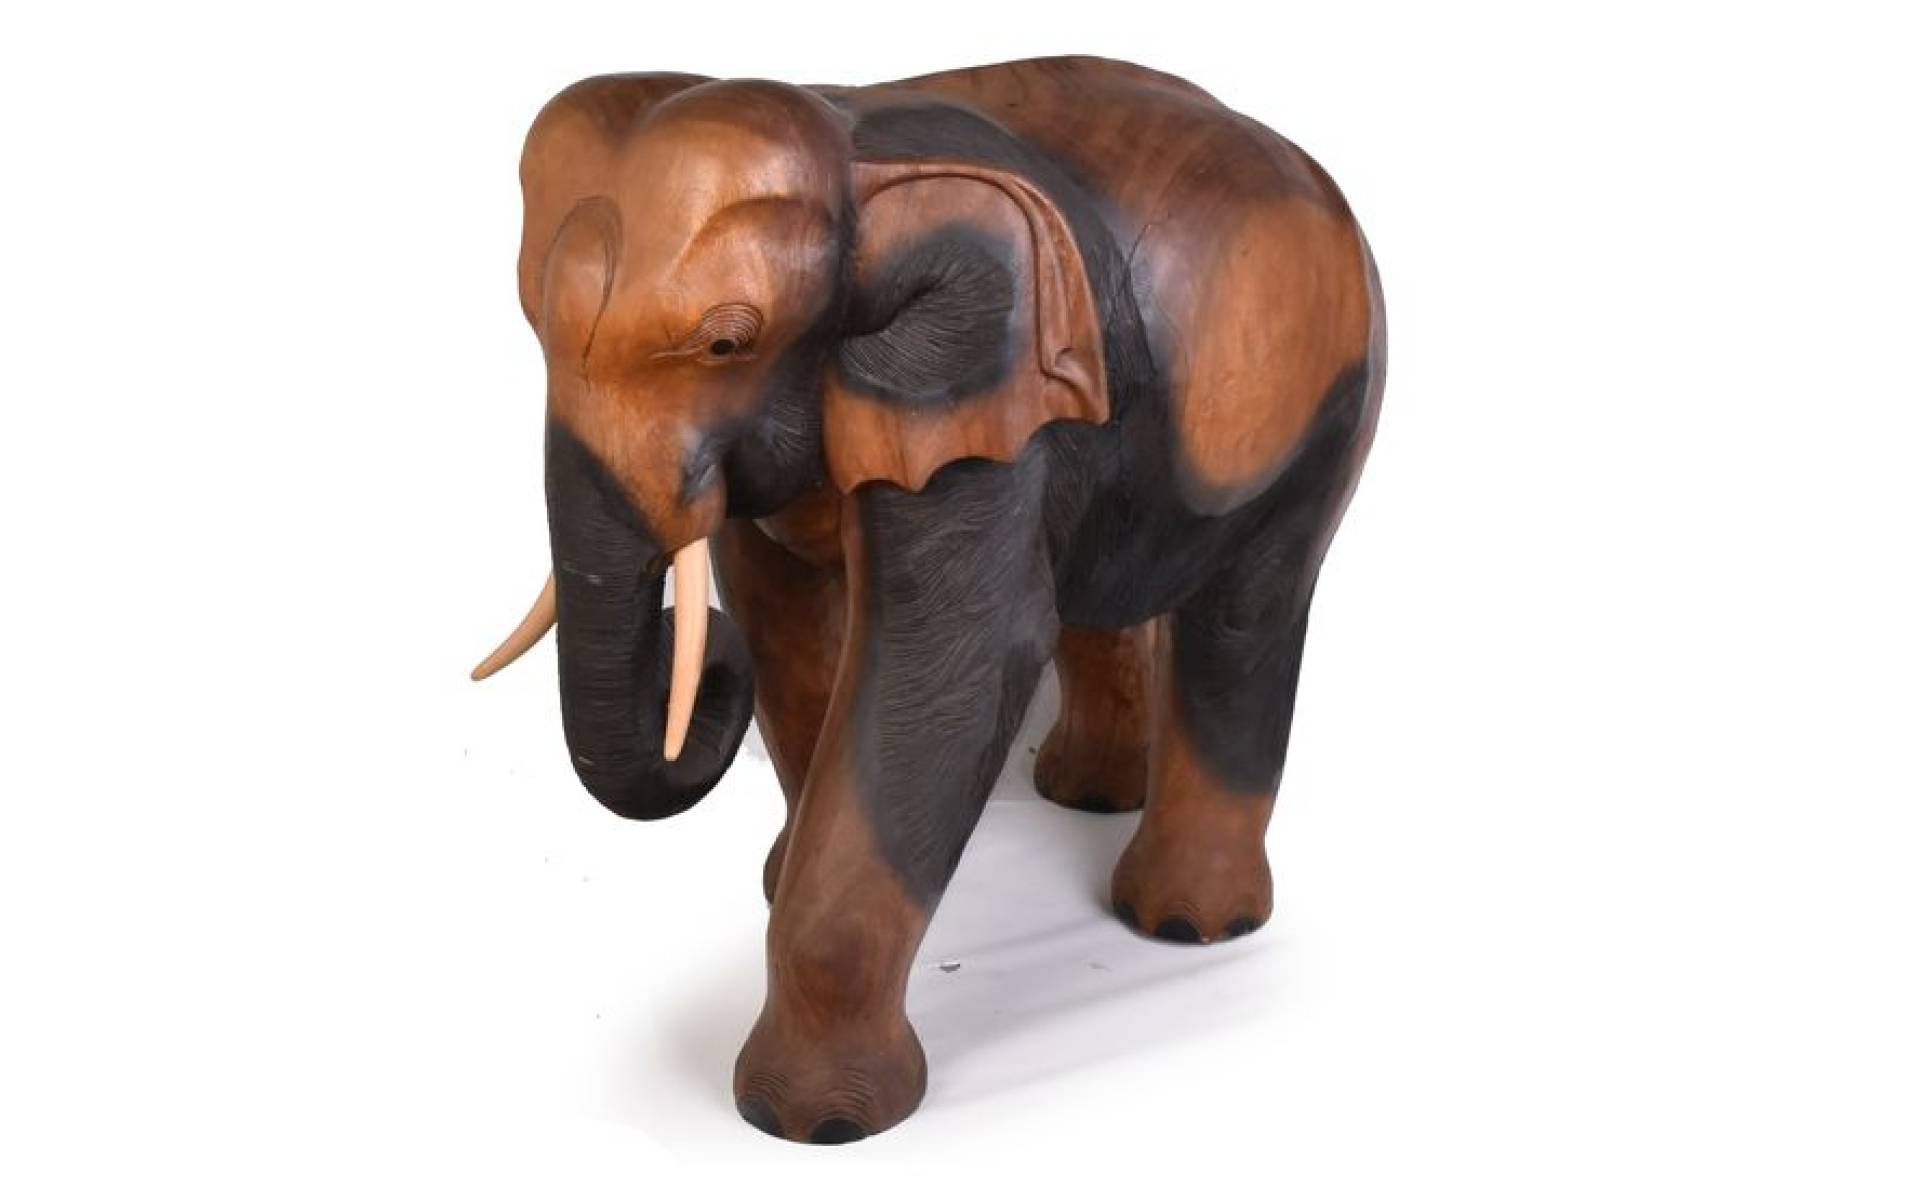 Slon vyrobený zo suaru, 100x58x100cm